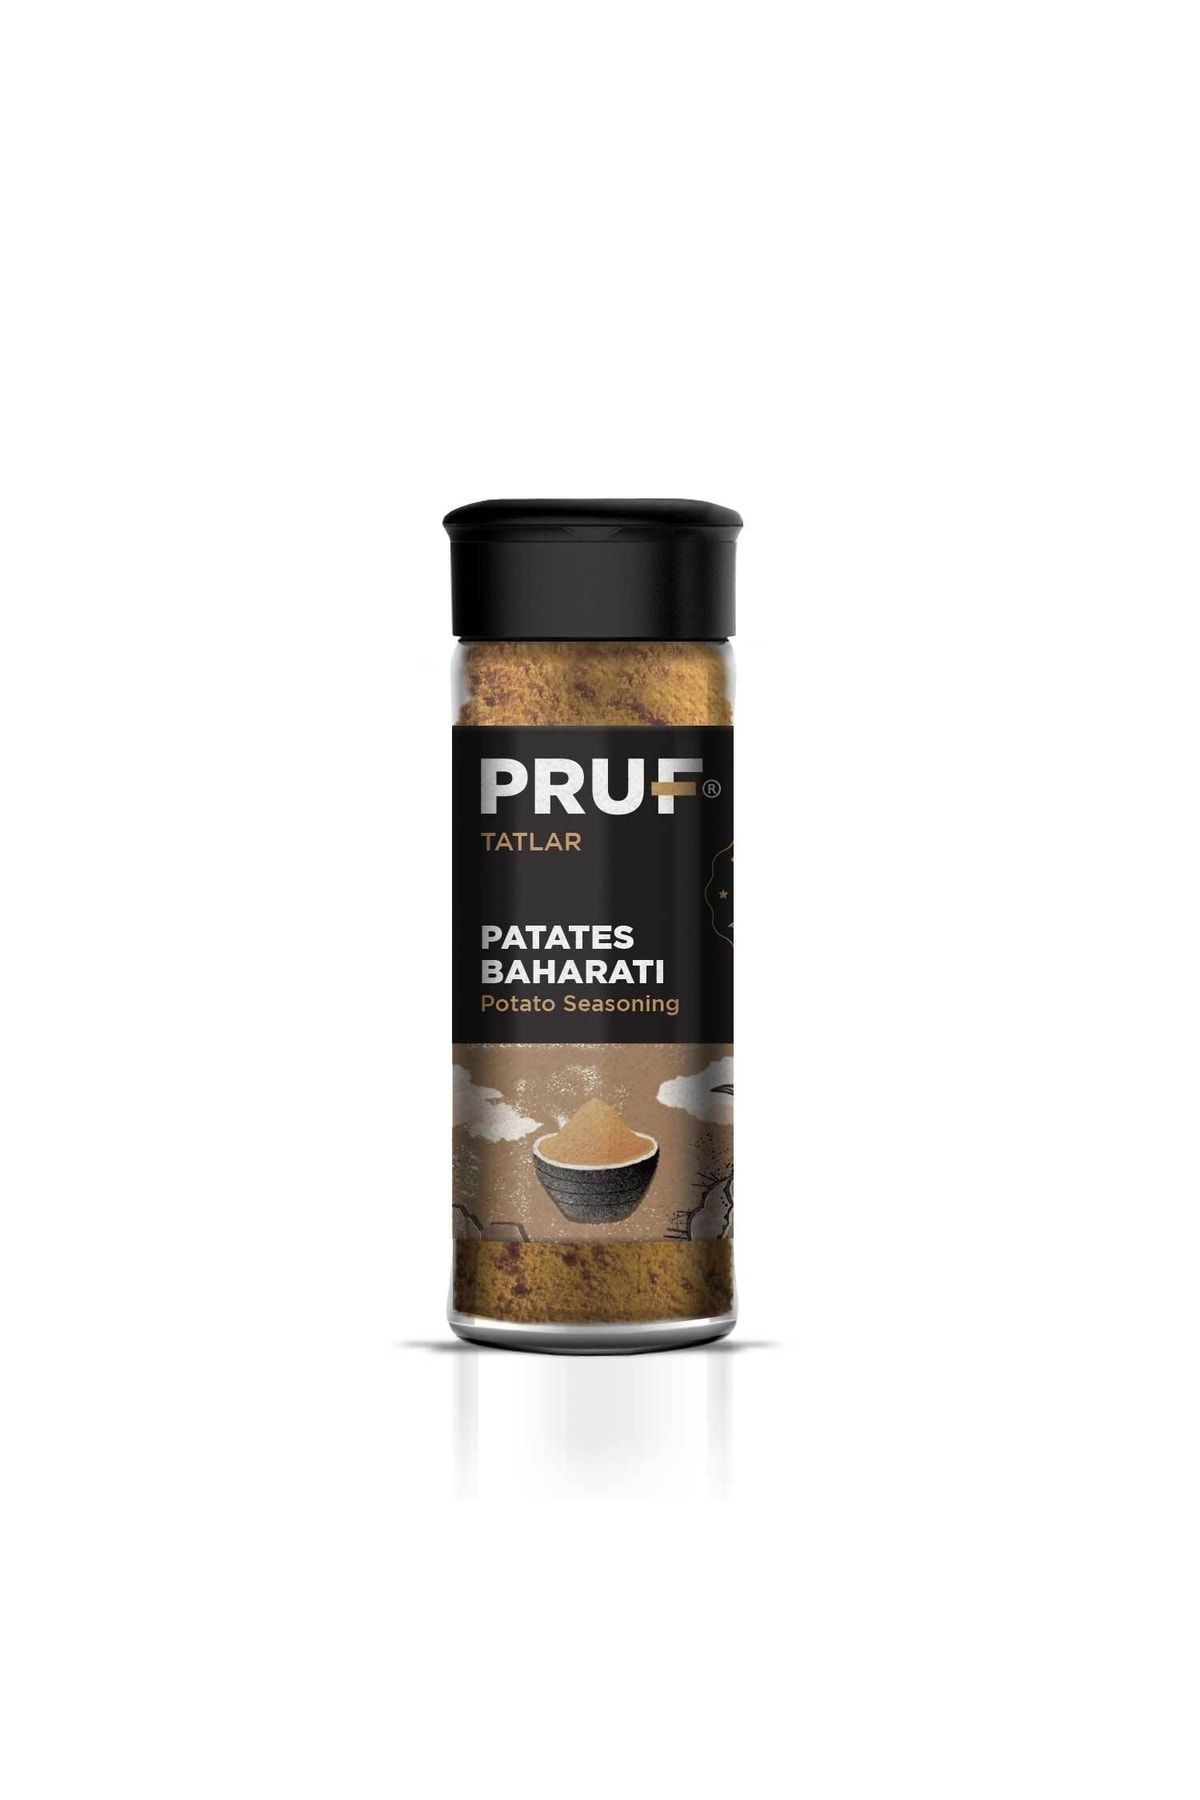 PRUF Patates Baharatı / Potato Seasoning 45 Gr. Sağlıklı Cam Şişe